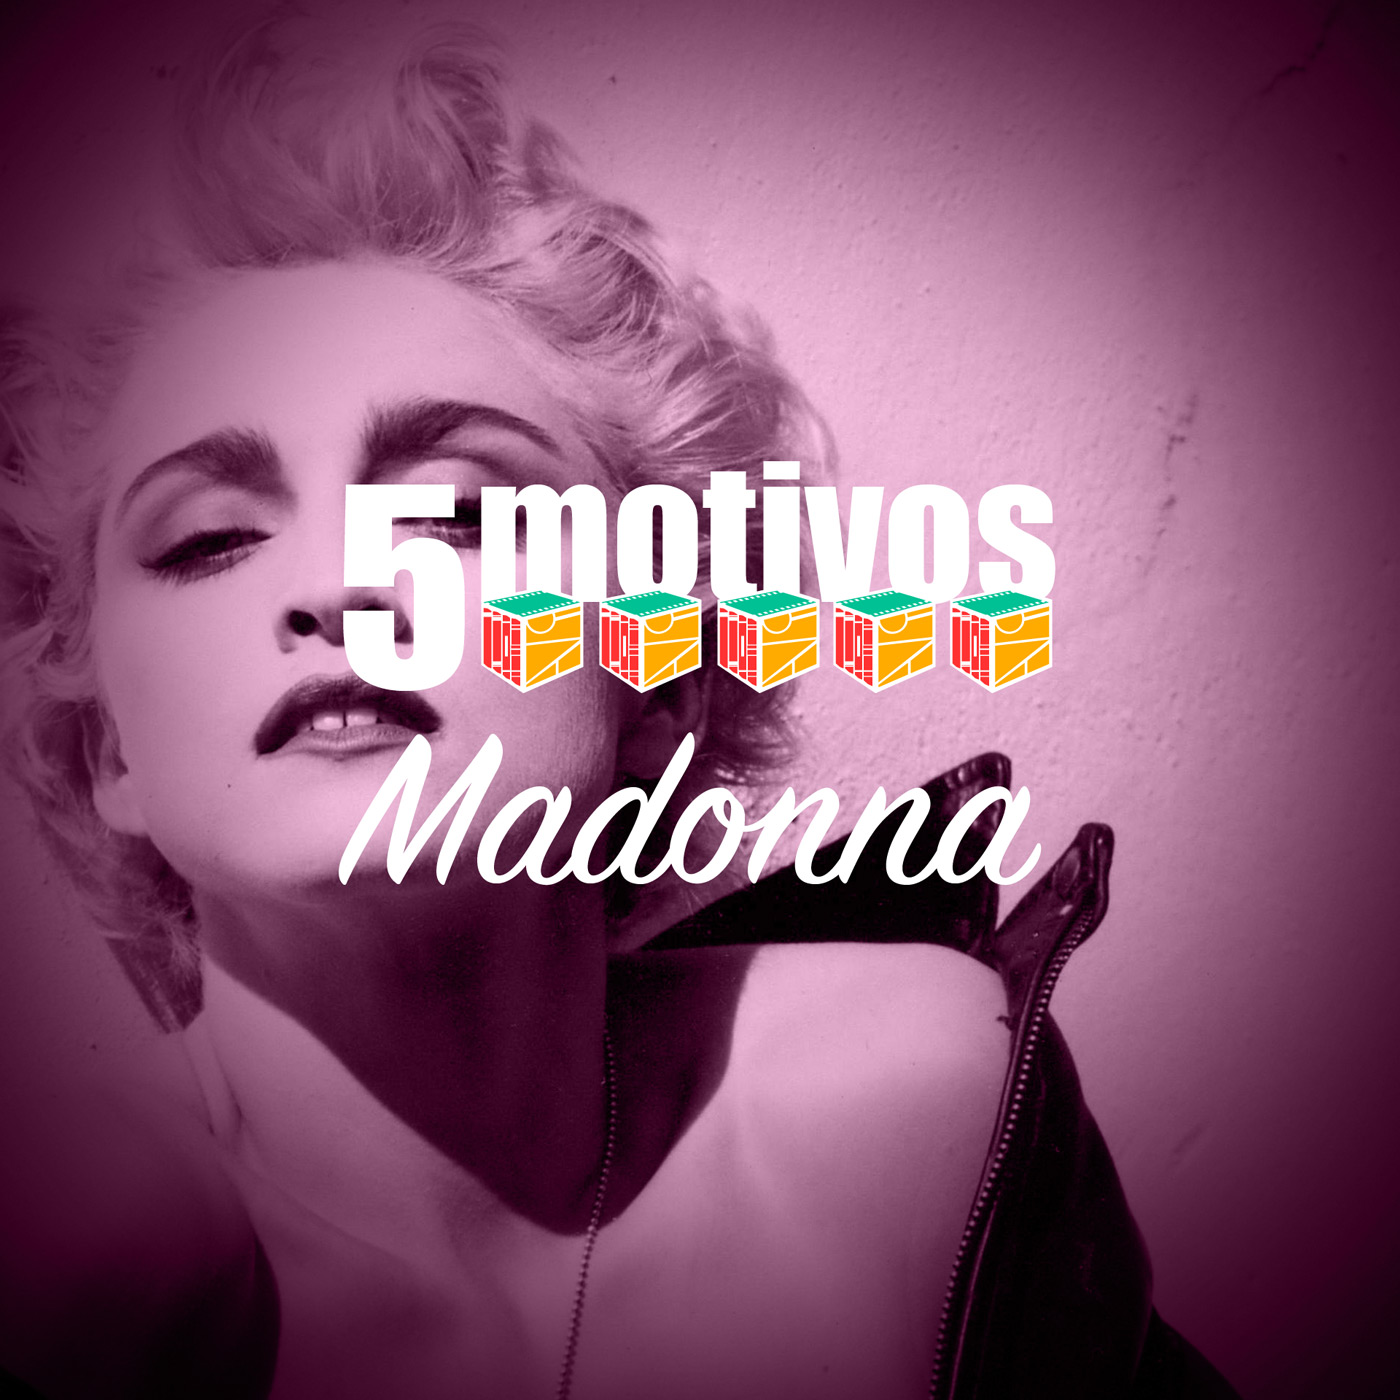 Iradex Podcast 165: 5 motivos para gostar de Madonna